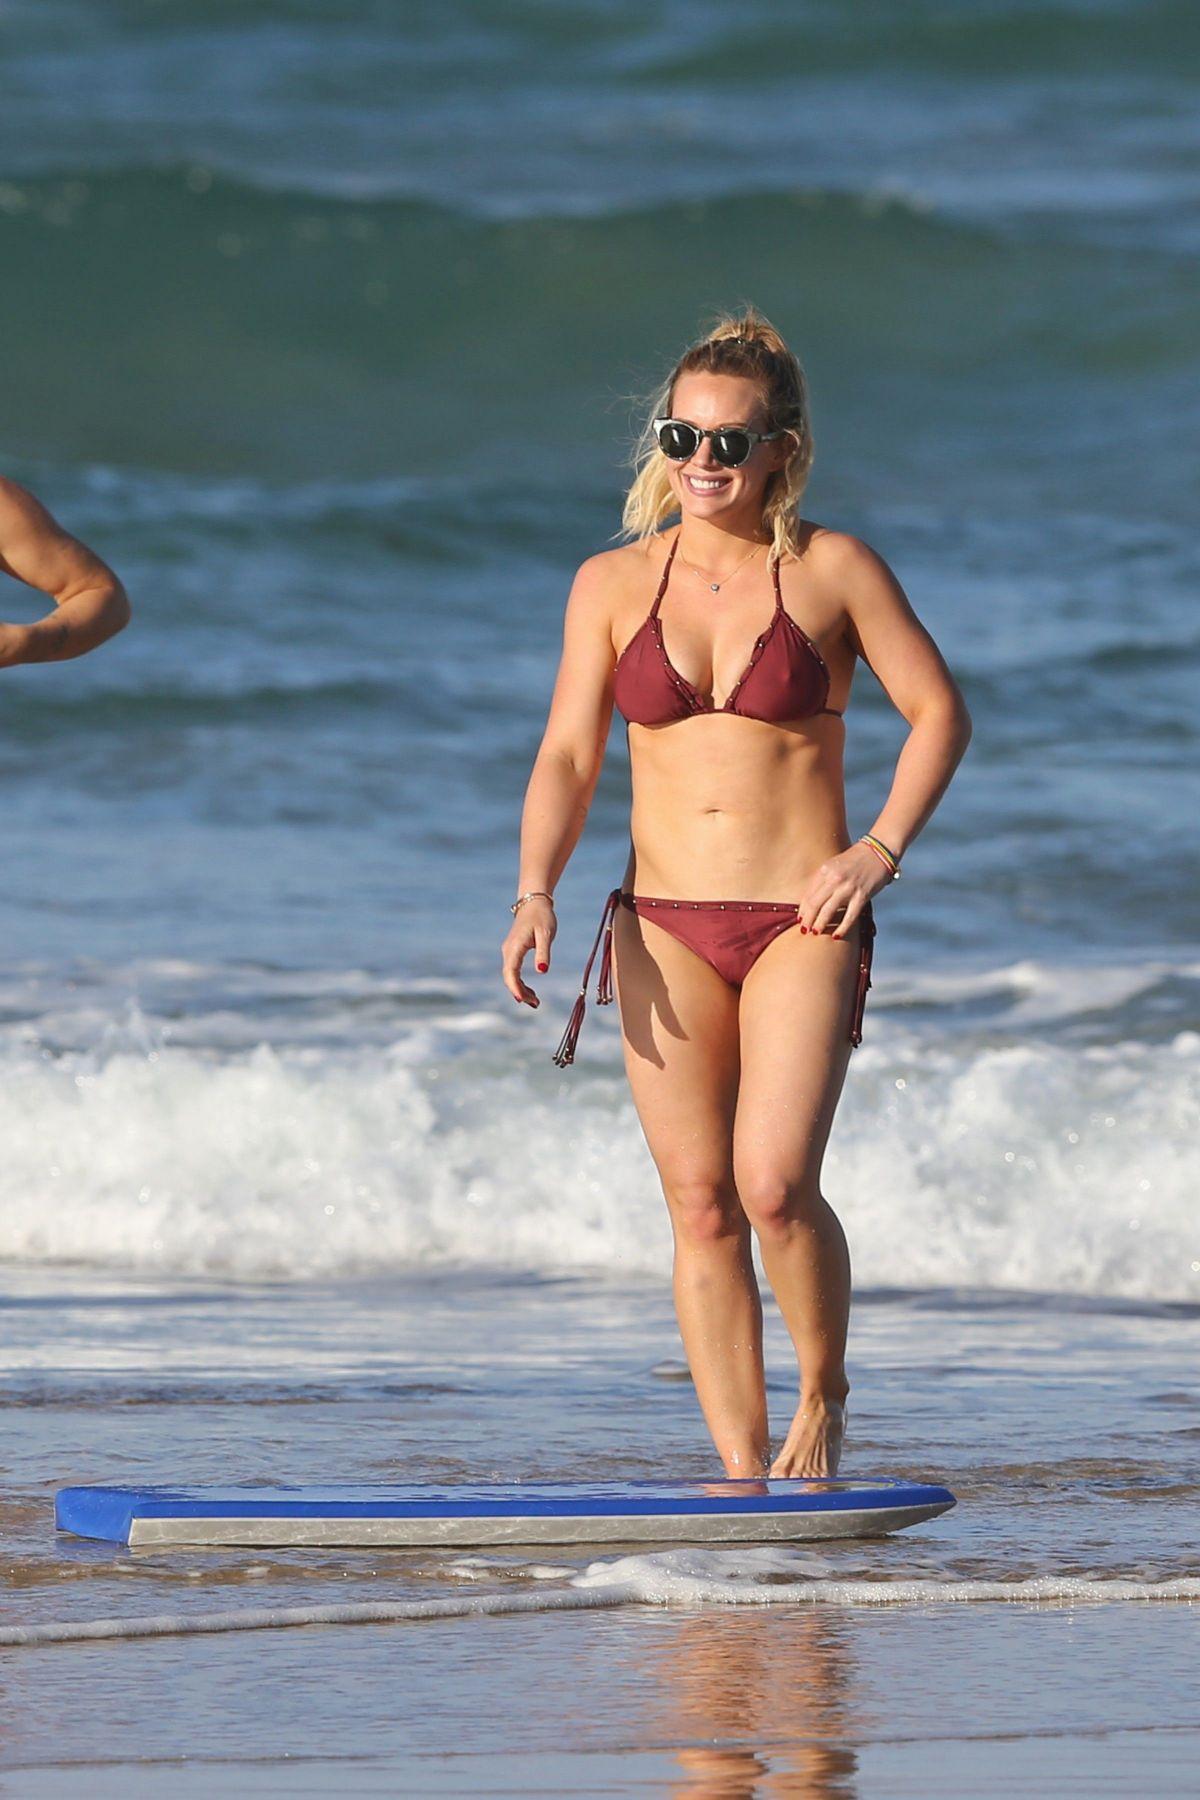 hilary duff bikini beach candid set leaked GJFGIA